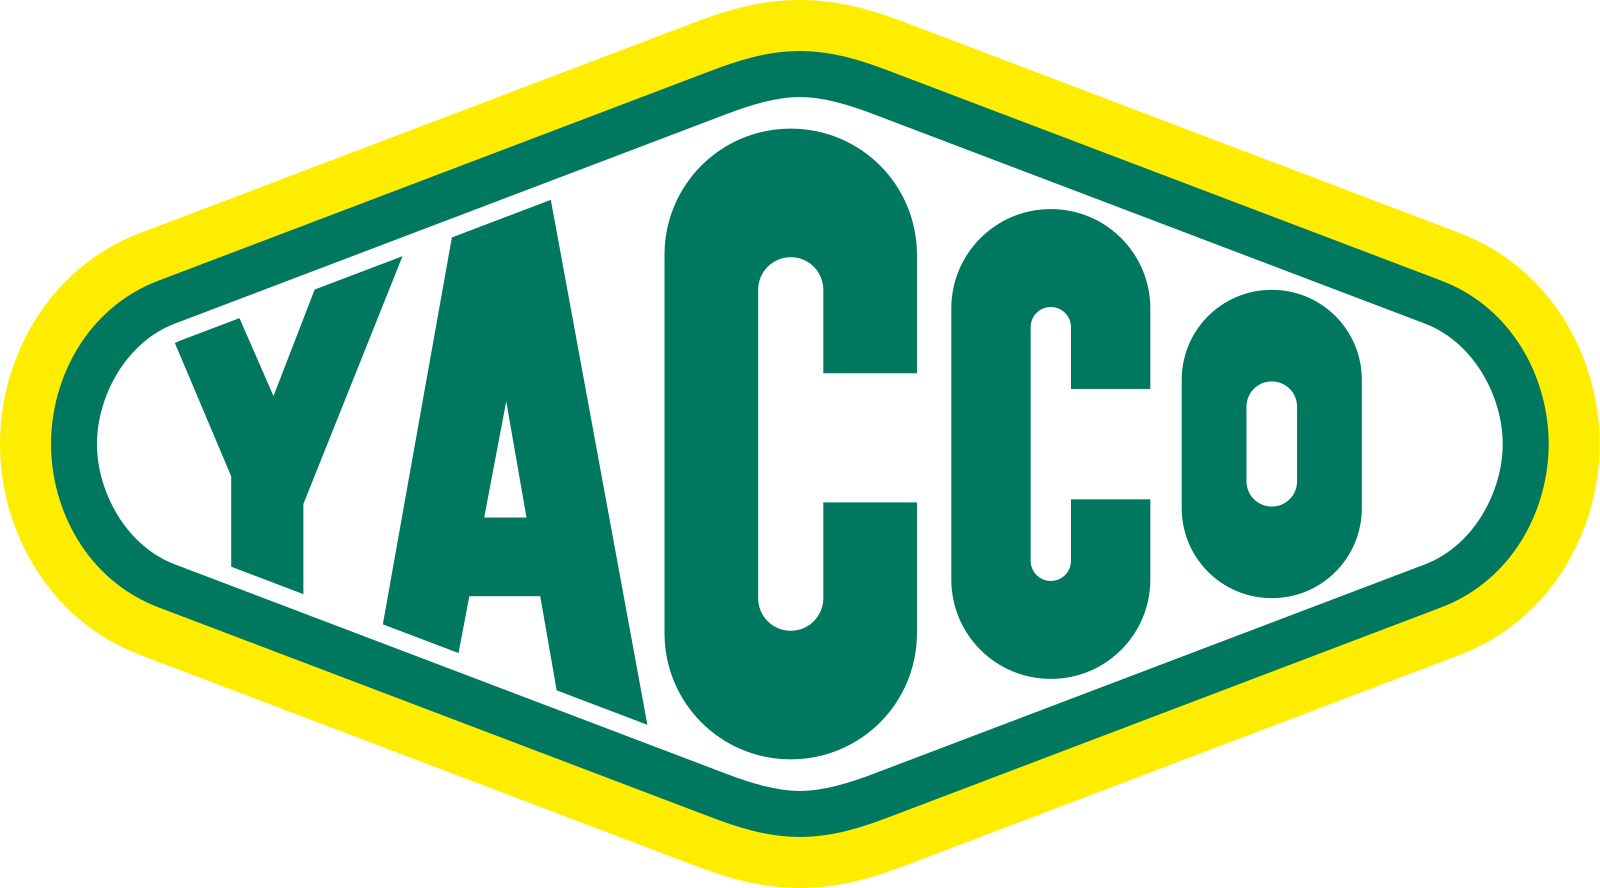 Масло лого. Yacco логотип. Эмблемы моторных масел. Масло логотип. Логотип автомасла.